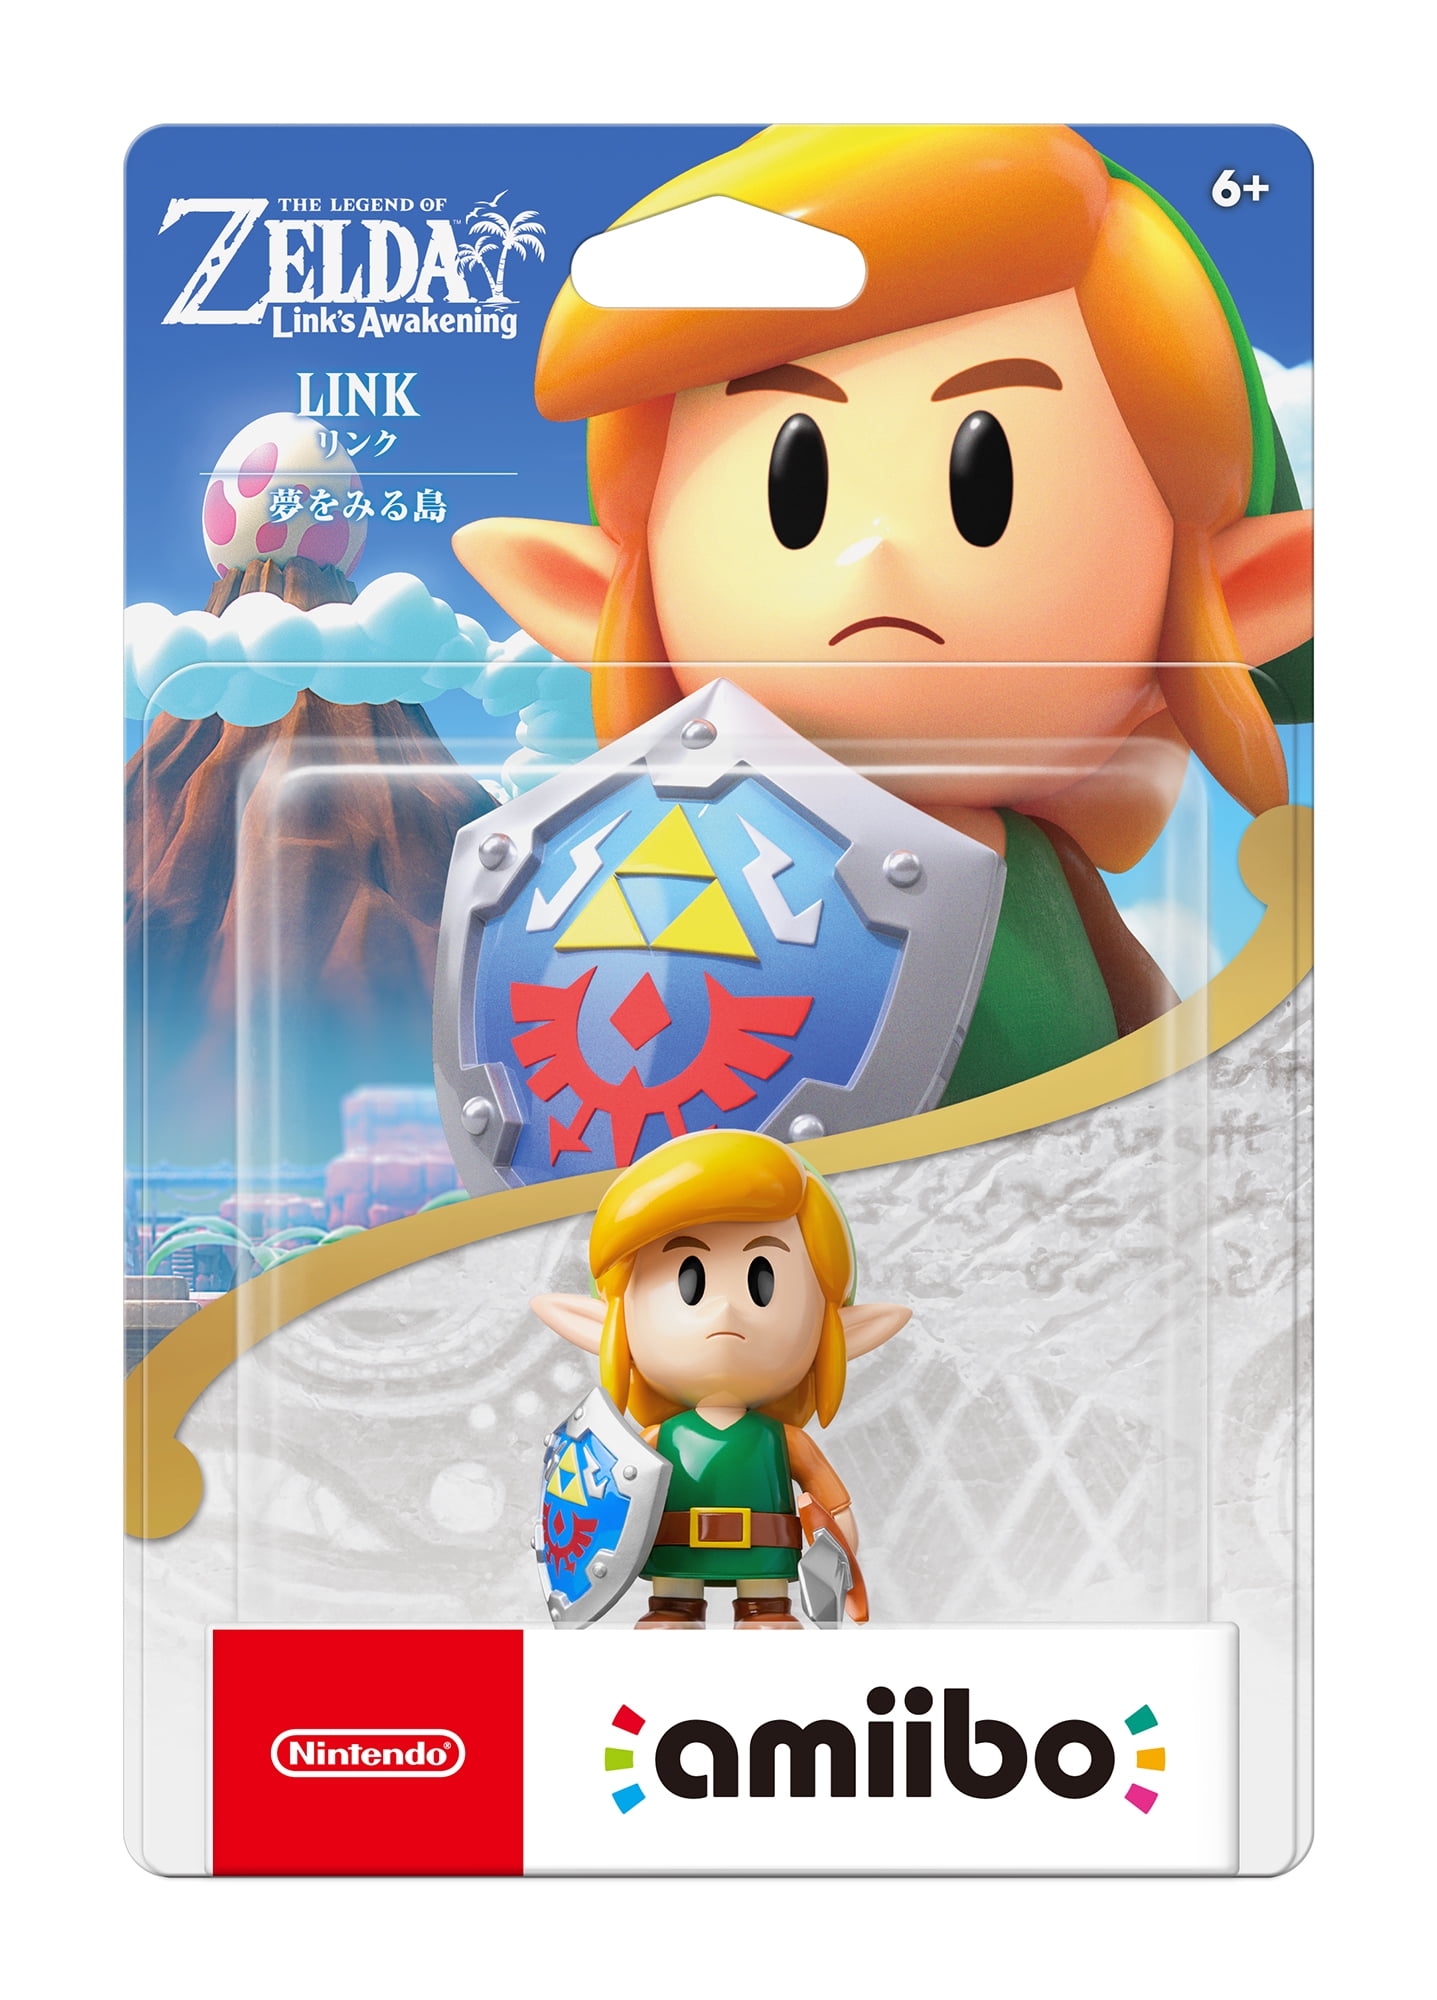 Nintendo Amiibo, Link, The Legend of Zelda Series